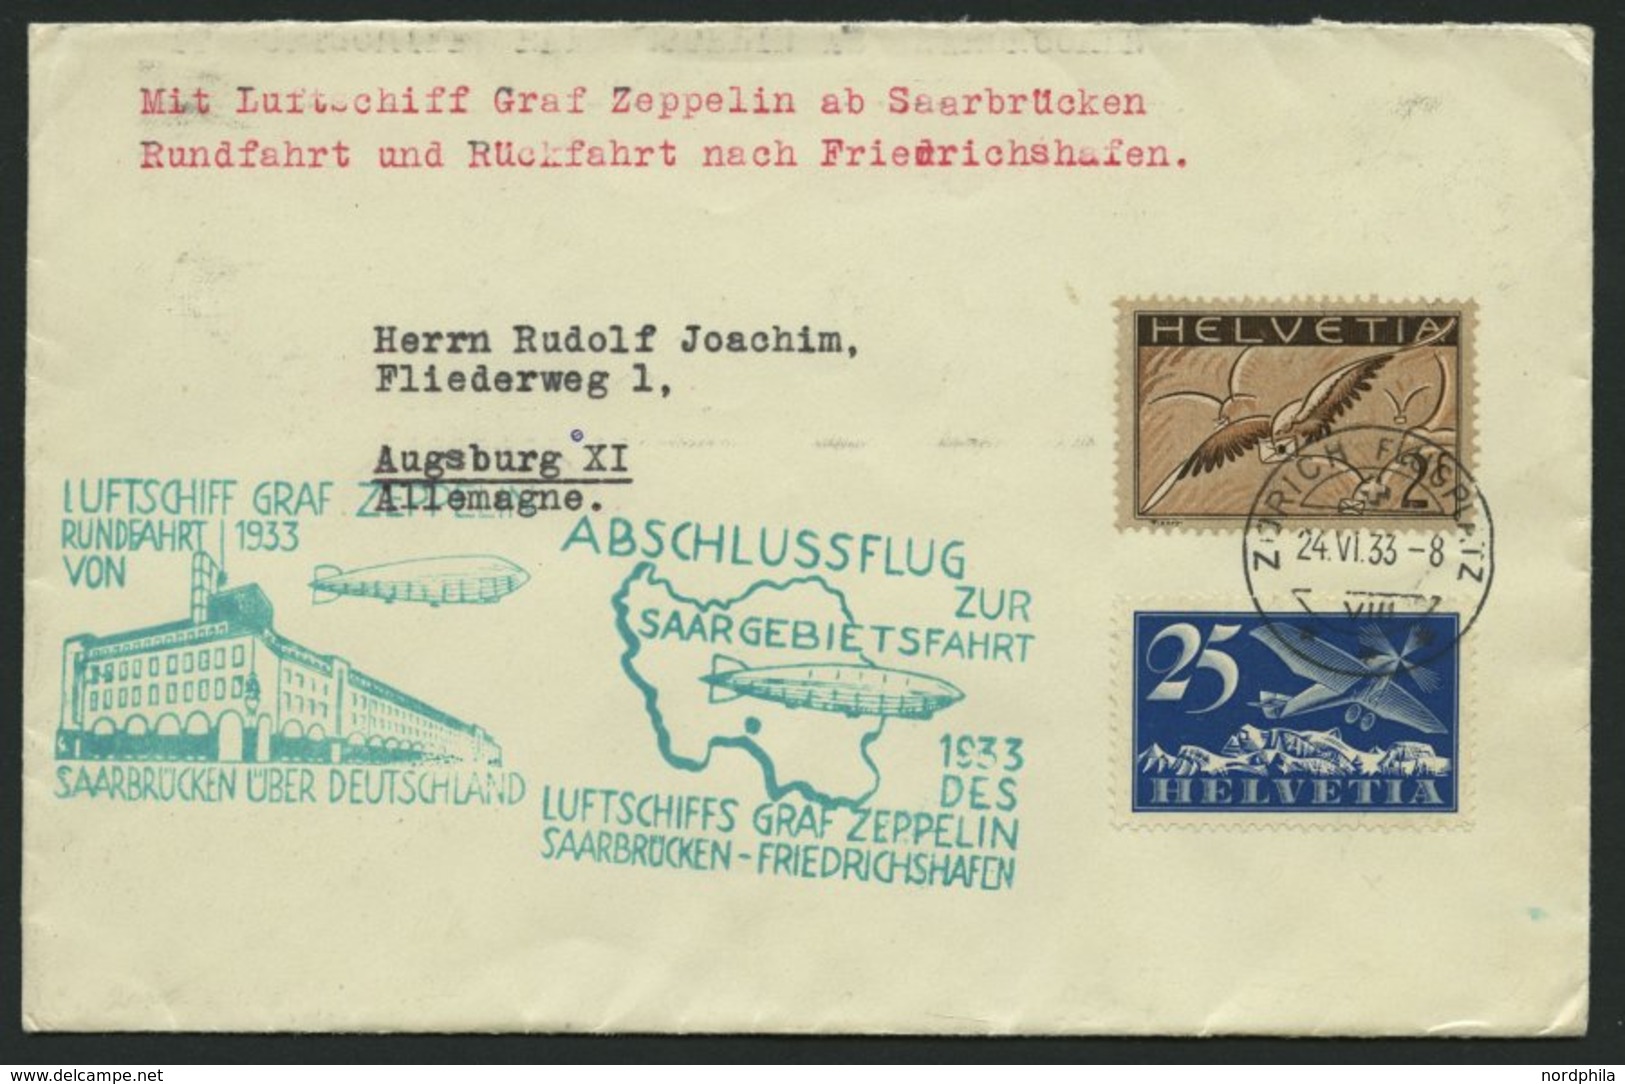 ZULEITUNGSPOST 218C BRIEF, Schweiz: 1933, Saargebietsfahrt, Rundfahrt, Beide Stempel Auf Prachtbrief - Luft- Und Zeppelinpost